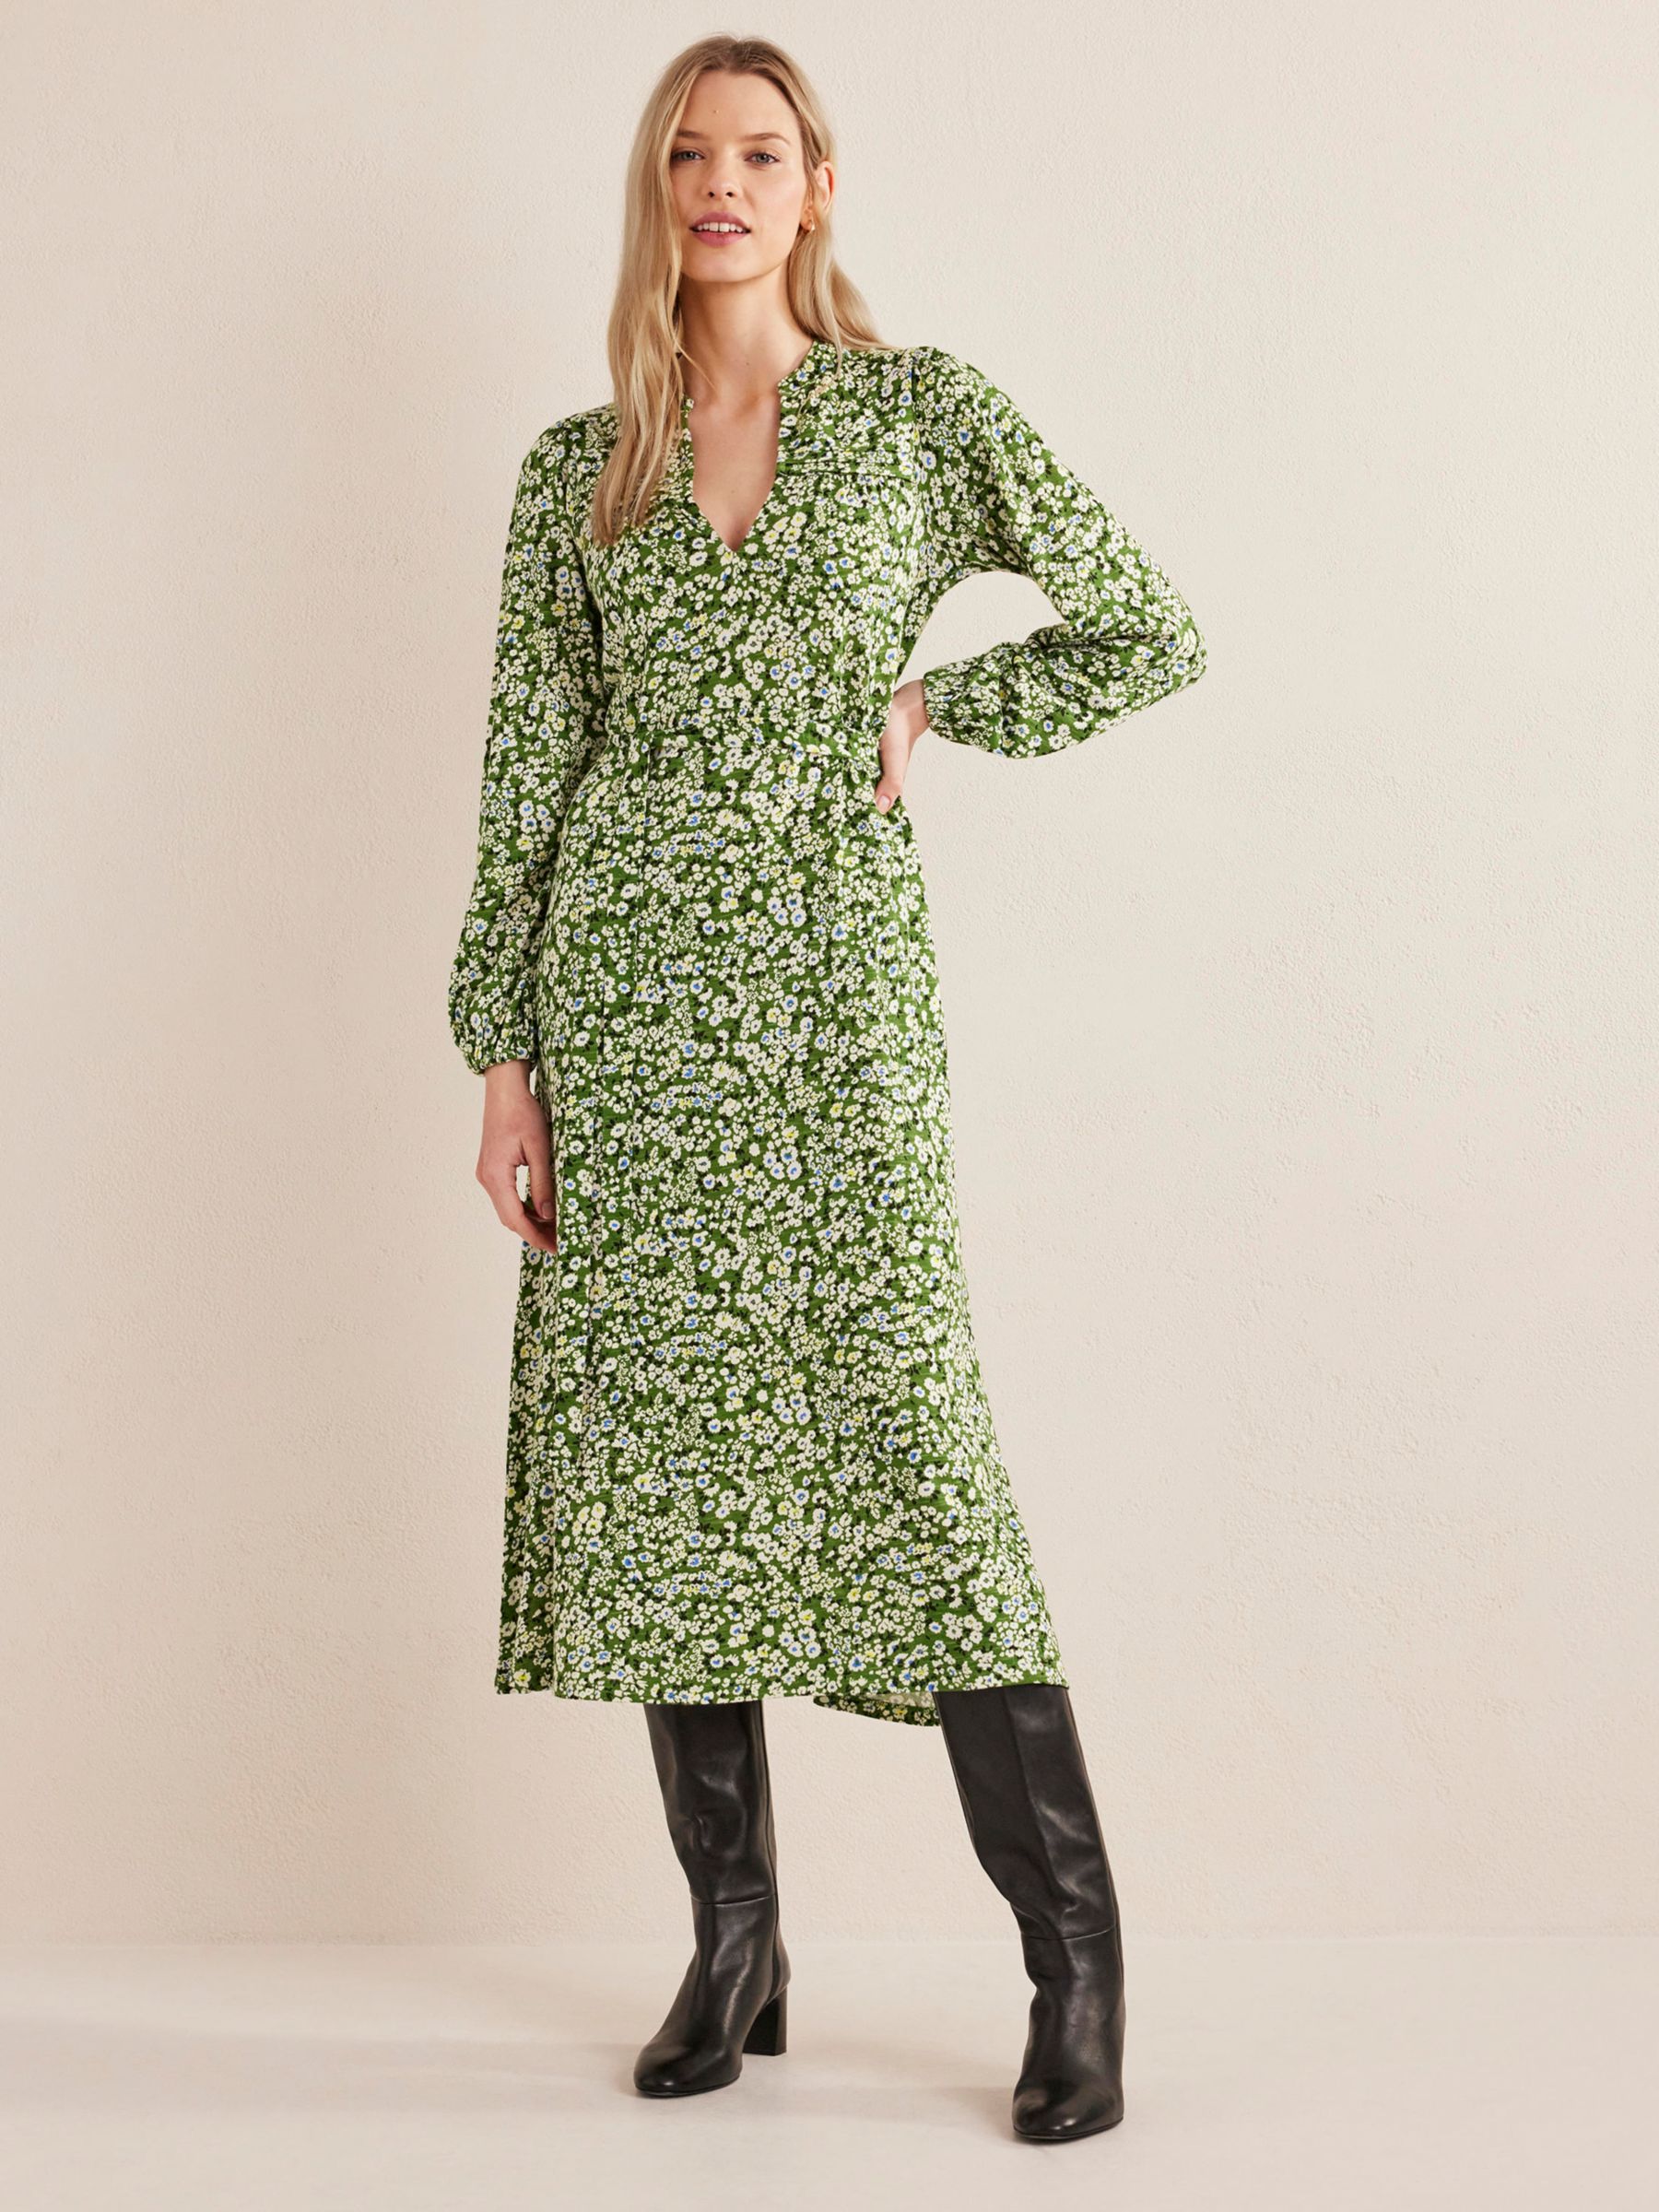 Boden Notch Neck Pintuck Midi Dress, Green, 8